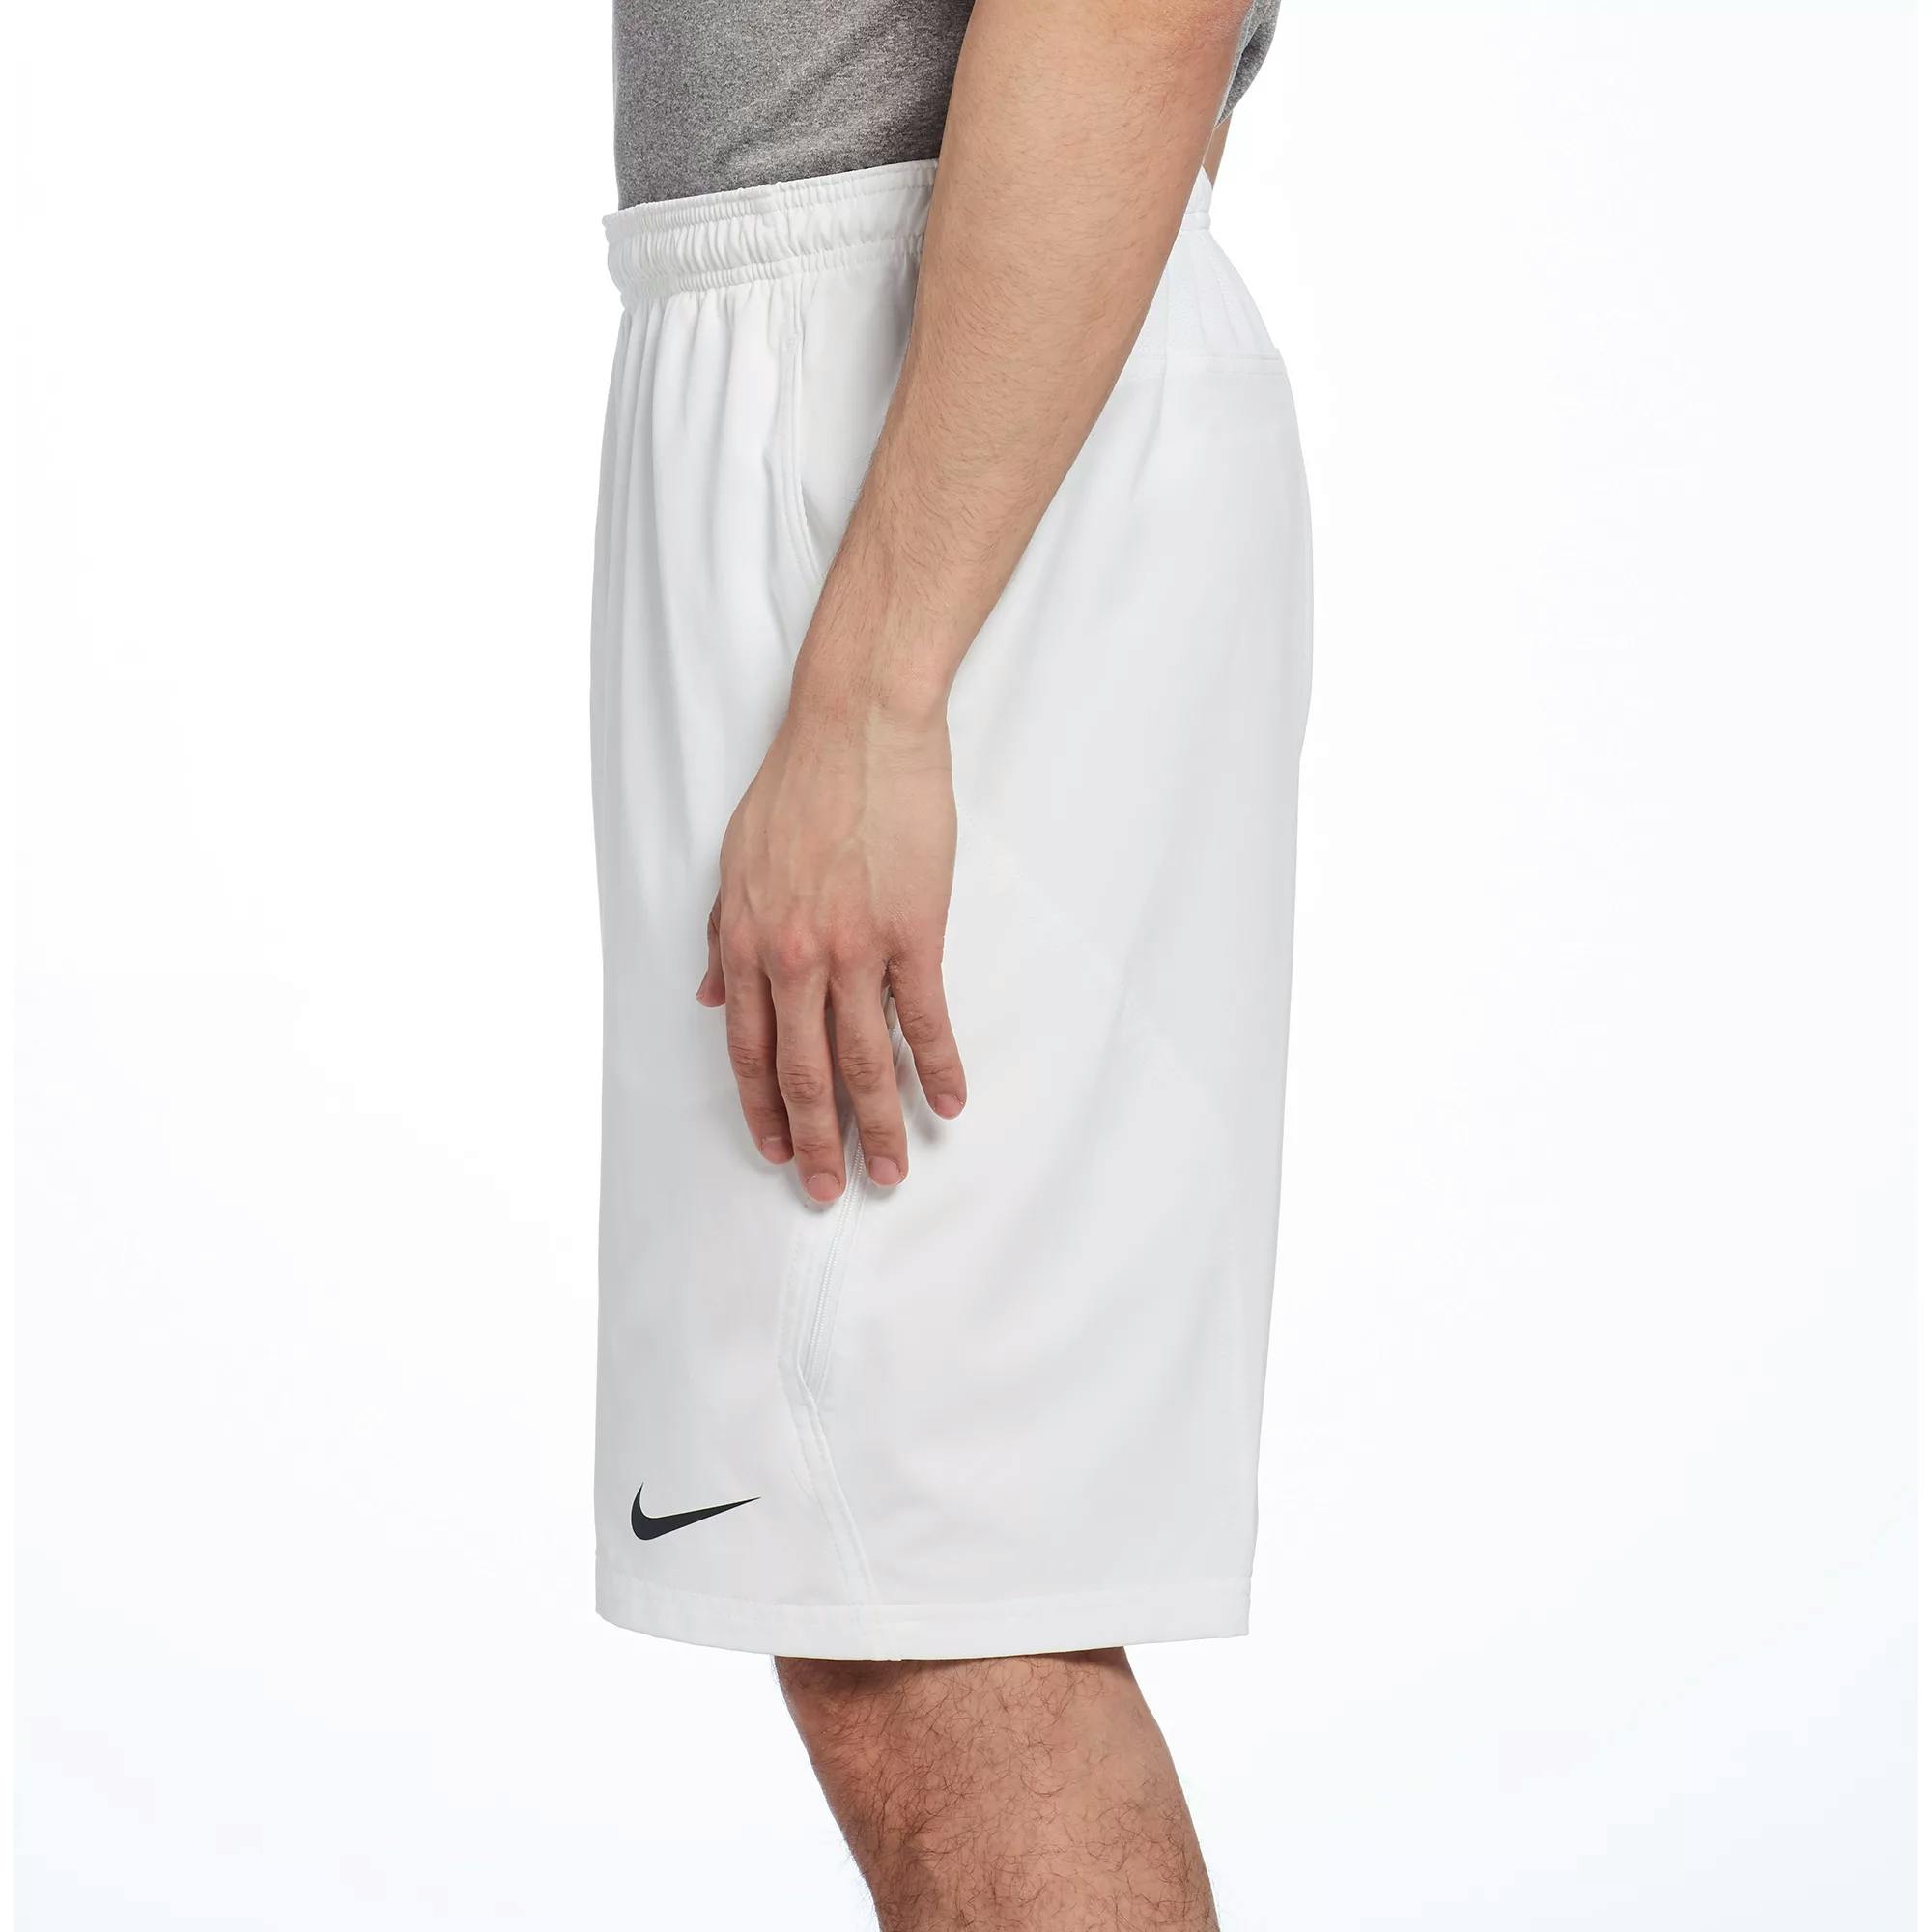 Nike Men's Net Woven 11in Tennis Shorts